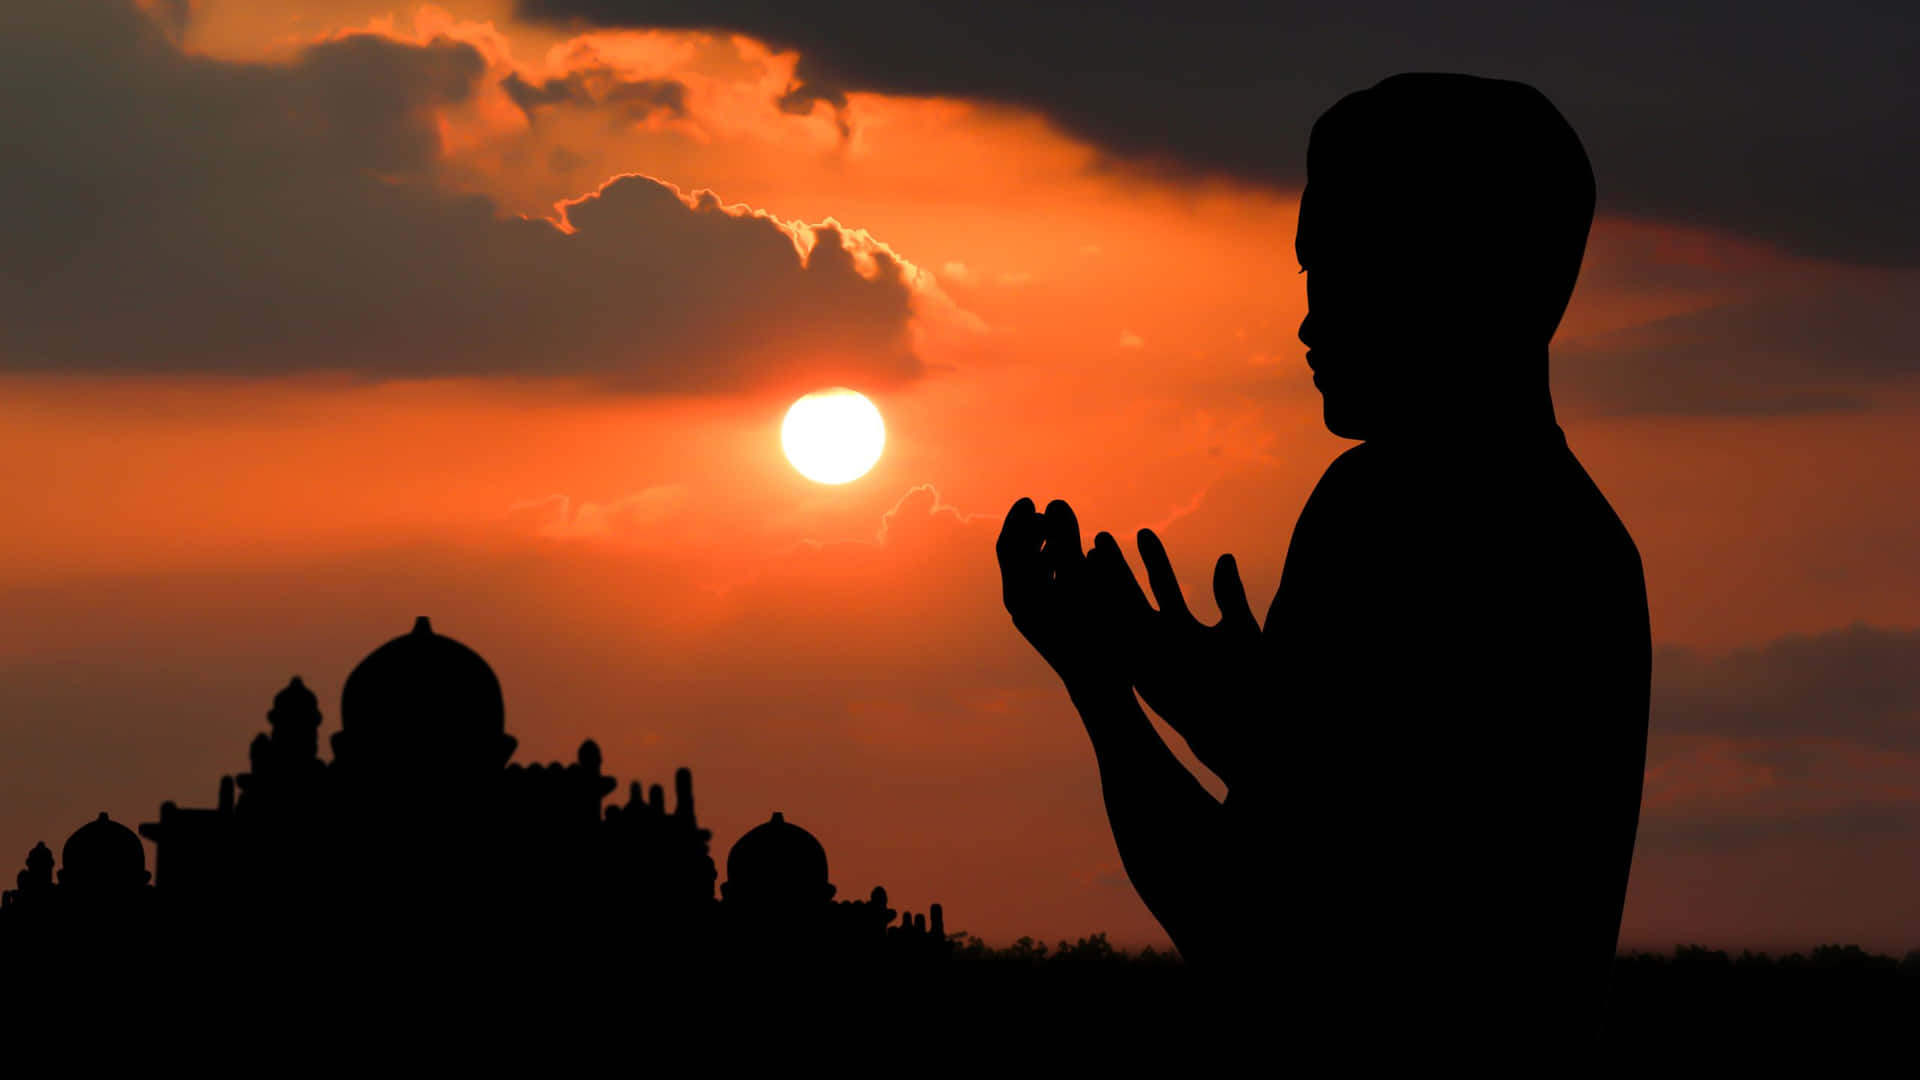 Meninomuçulmano Em Oração Durante O Pôr Do Sol. Papel de Parede